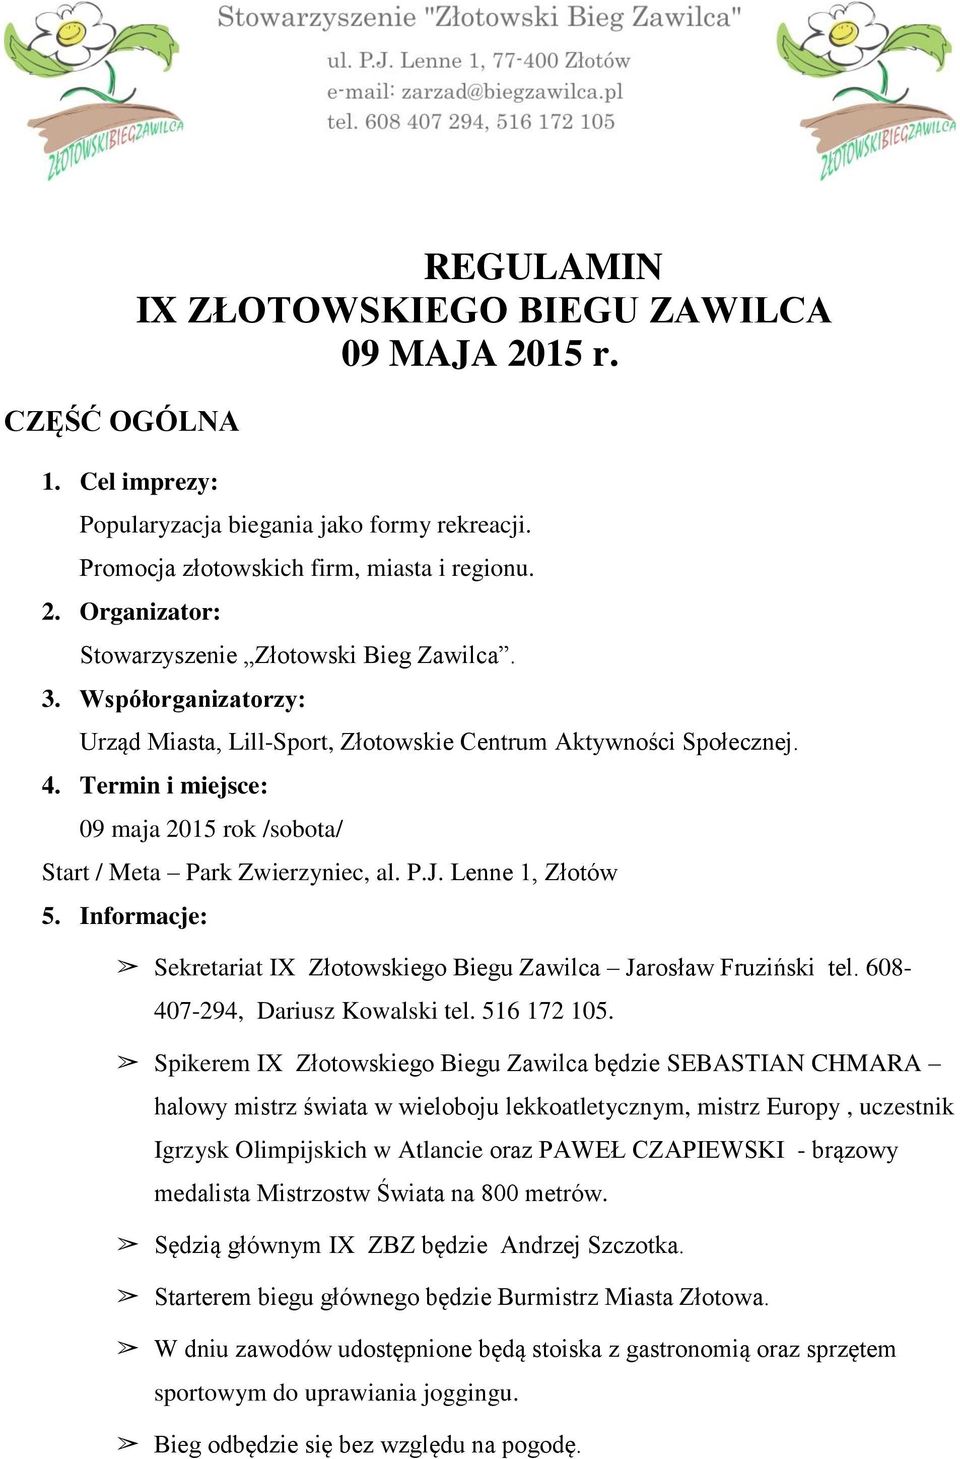 Informacje: Sekretariat IX Złotowskiego Biegu Zawilca Jarosław Fruziński tel. 608-407-294, Dariusz Kowalski tel. 516 172 105.